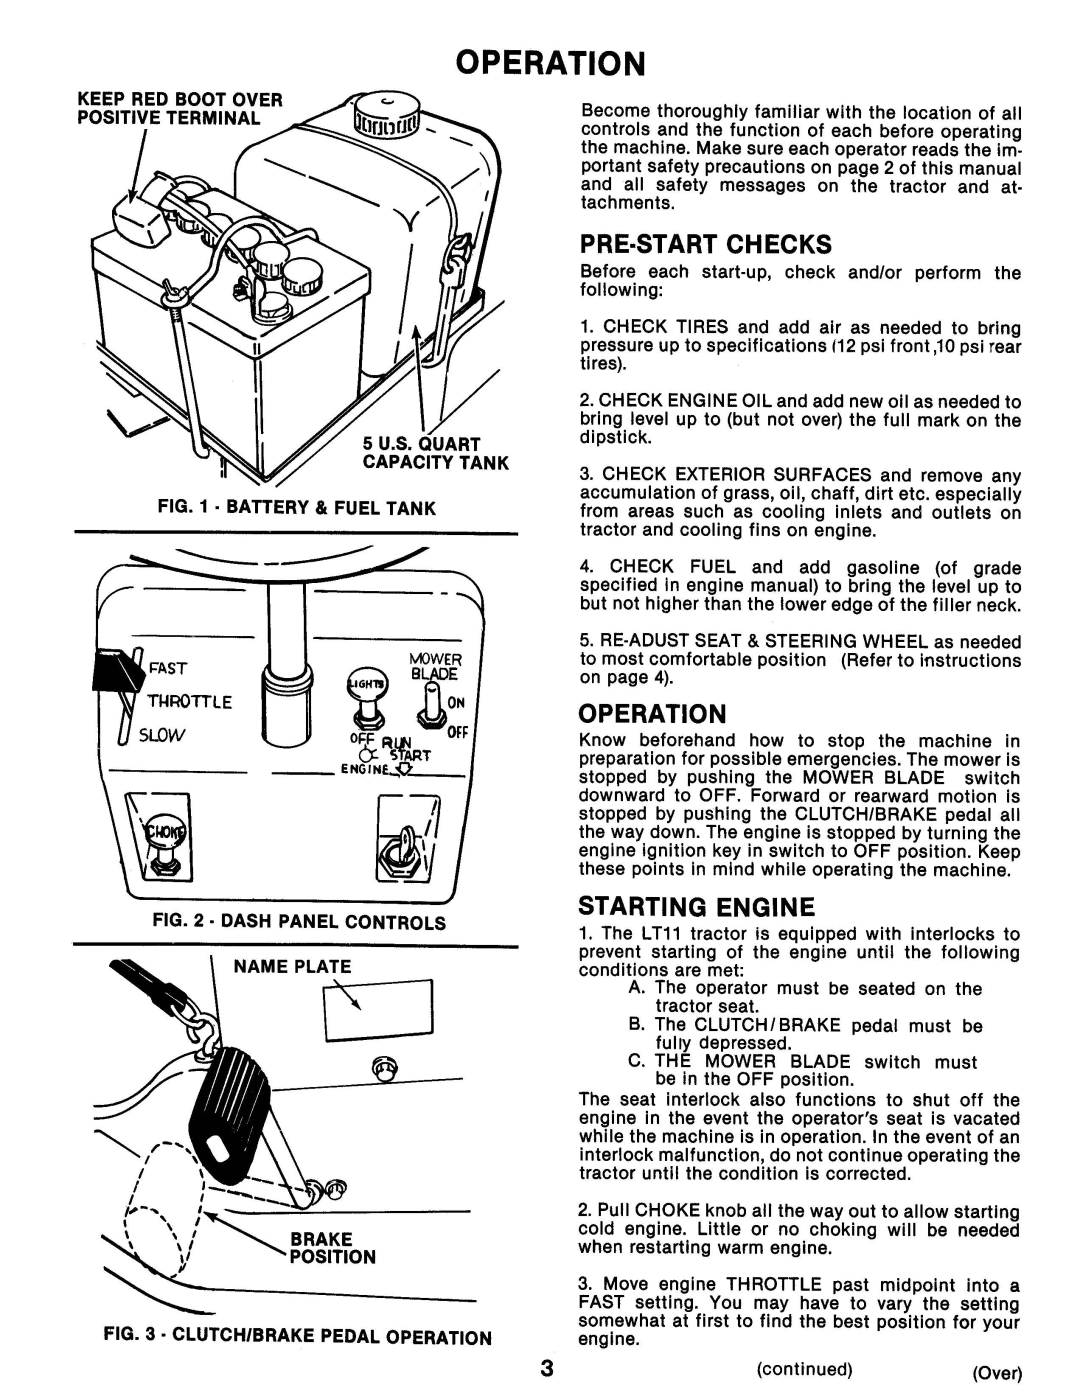 Snapper LT11 manual 